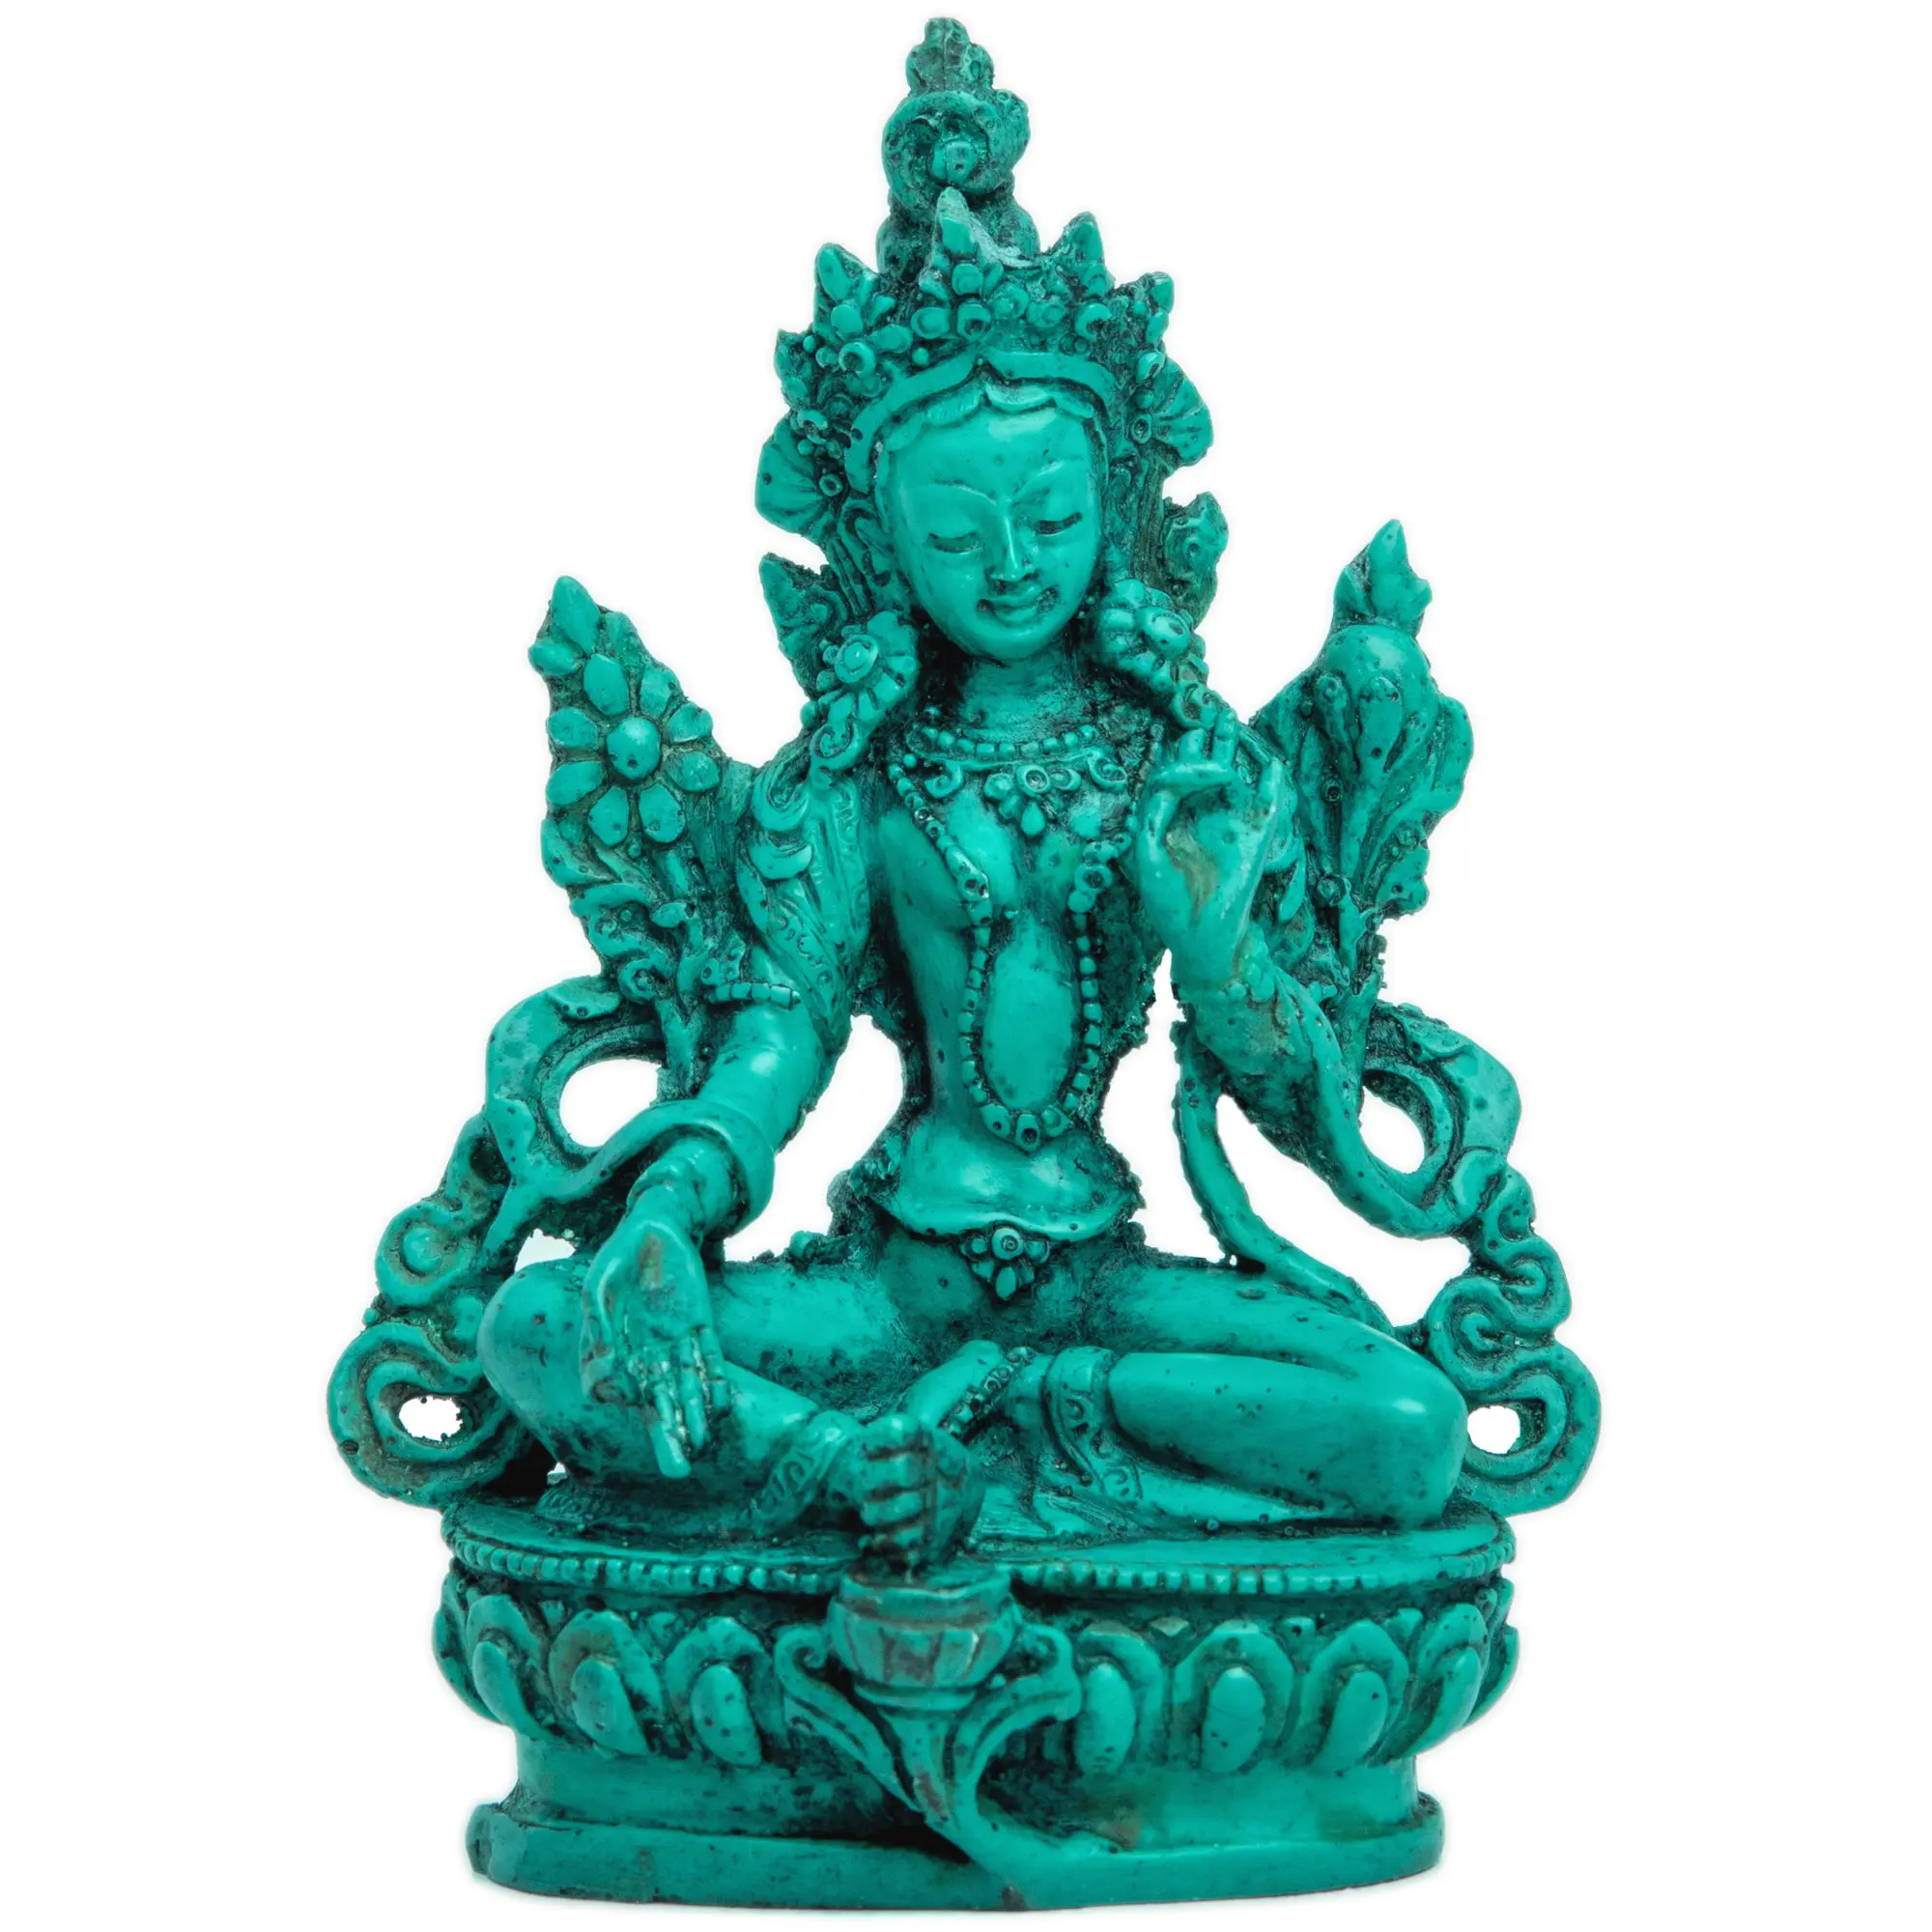 Tượng nhựa Tara Xanh Tây Tạng-8 inch-Nữ Thần từ bi-thủ công Quan Âm-trang trí bàn thờ Phật Giáo tâm linh